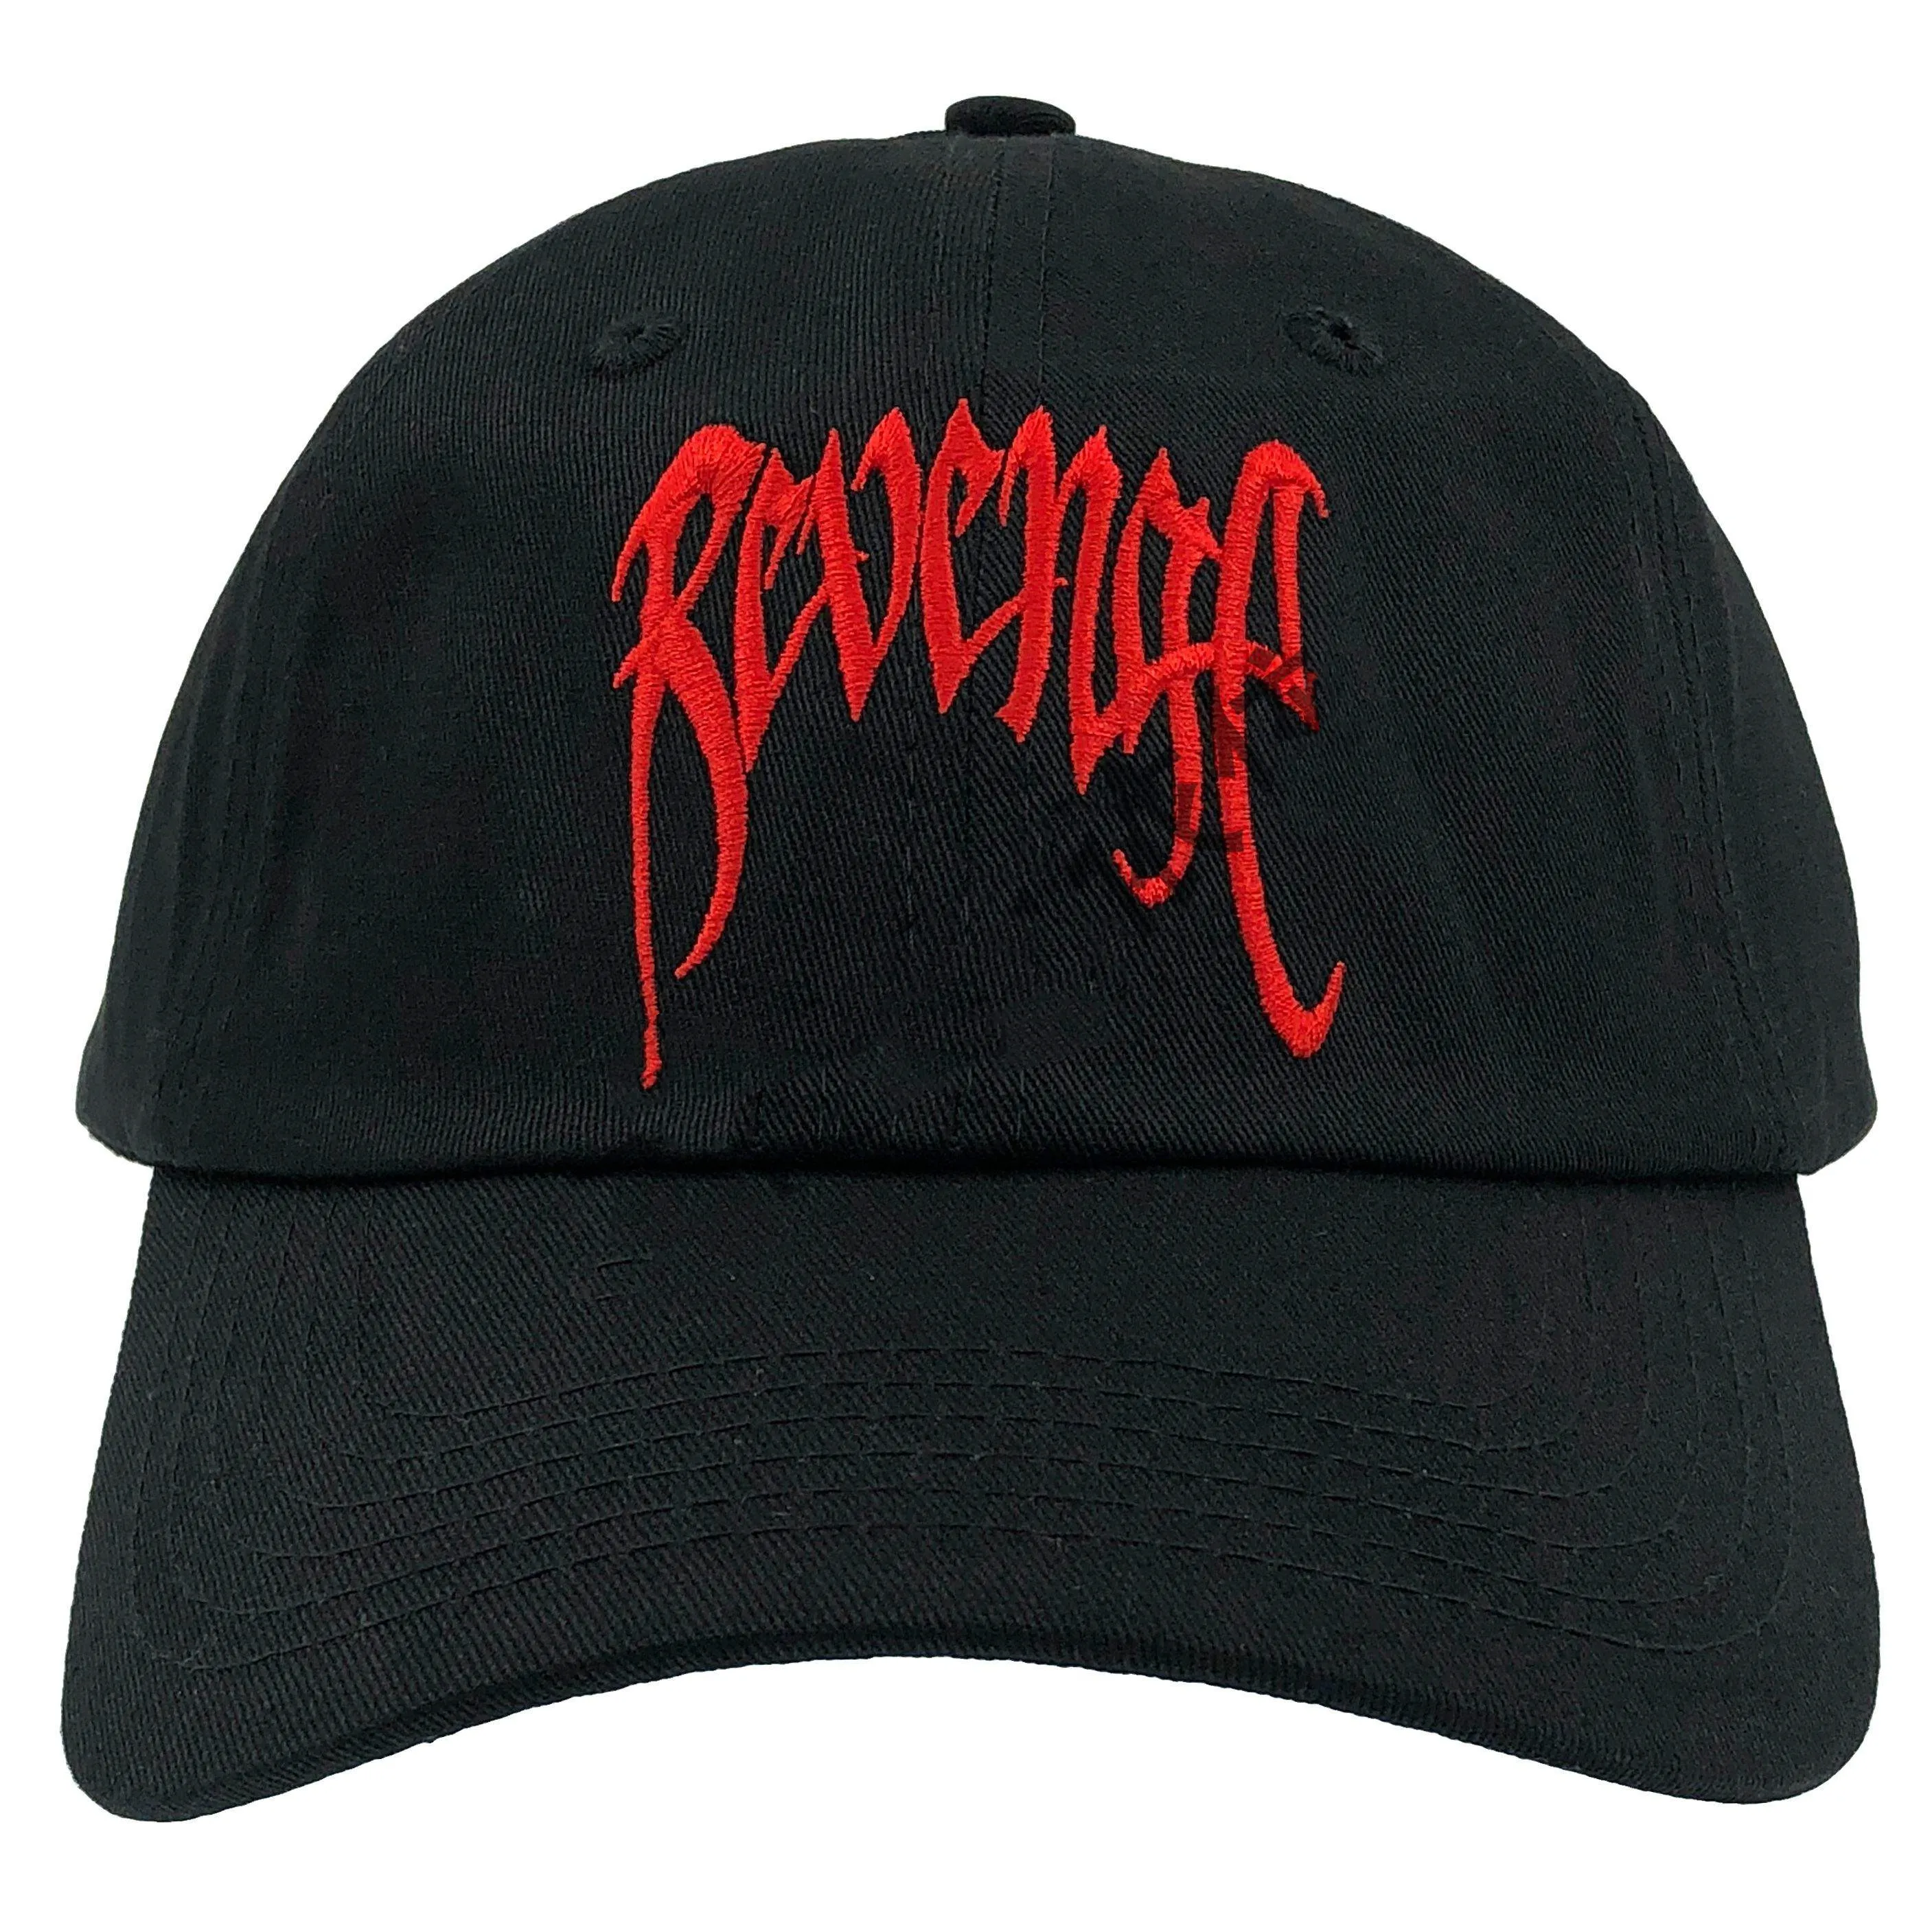 

Revenge xxx Baseball Caps for men rapper Hip hop Sunhat Cap Skateboards Kpop Summer Casquette Black Hats Women Black Snapback